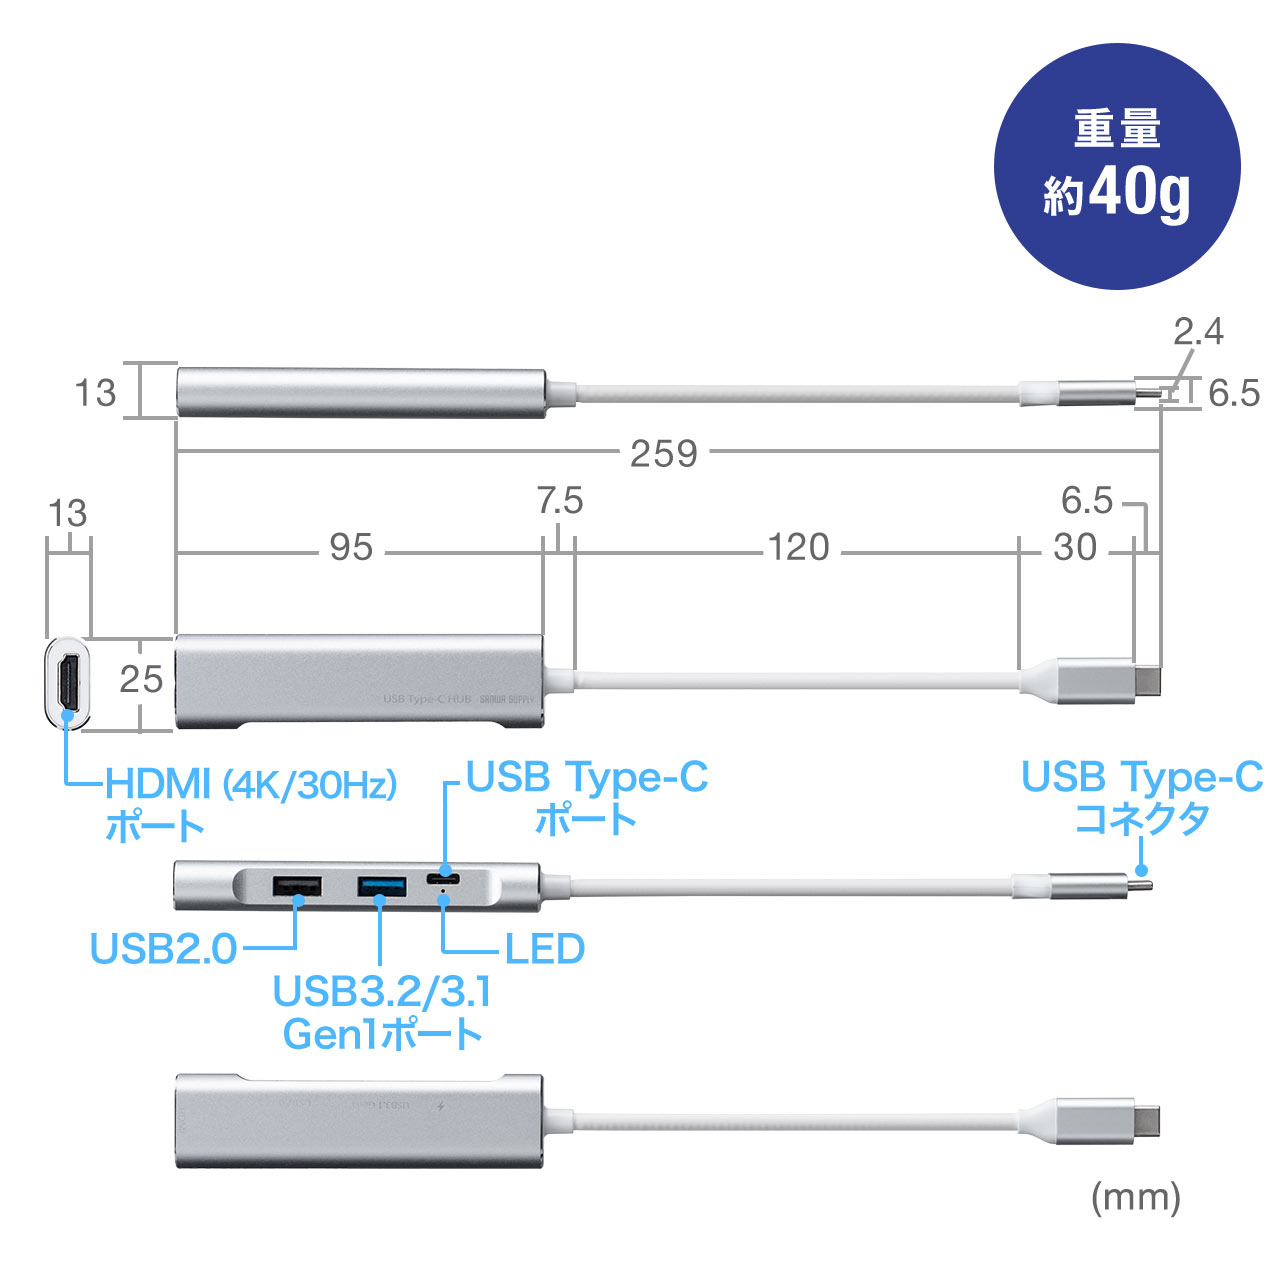 USB Type-C hbLOXe[V oC^Cv PD/60WΉ 4KΉ 4in1 HDMI Type-C USB3.0 USB2.0 K^bN 400-HUB086GM